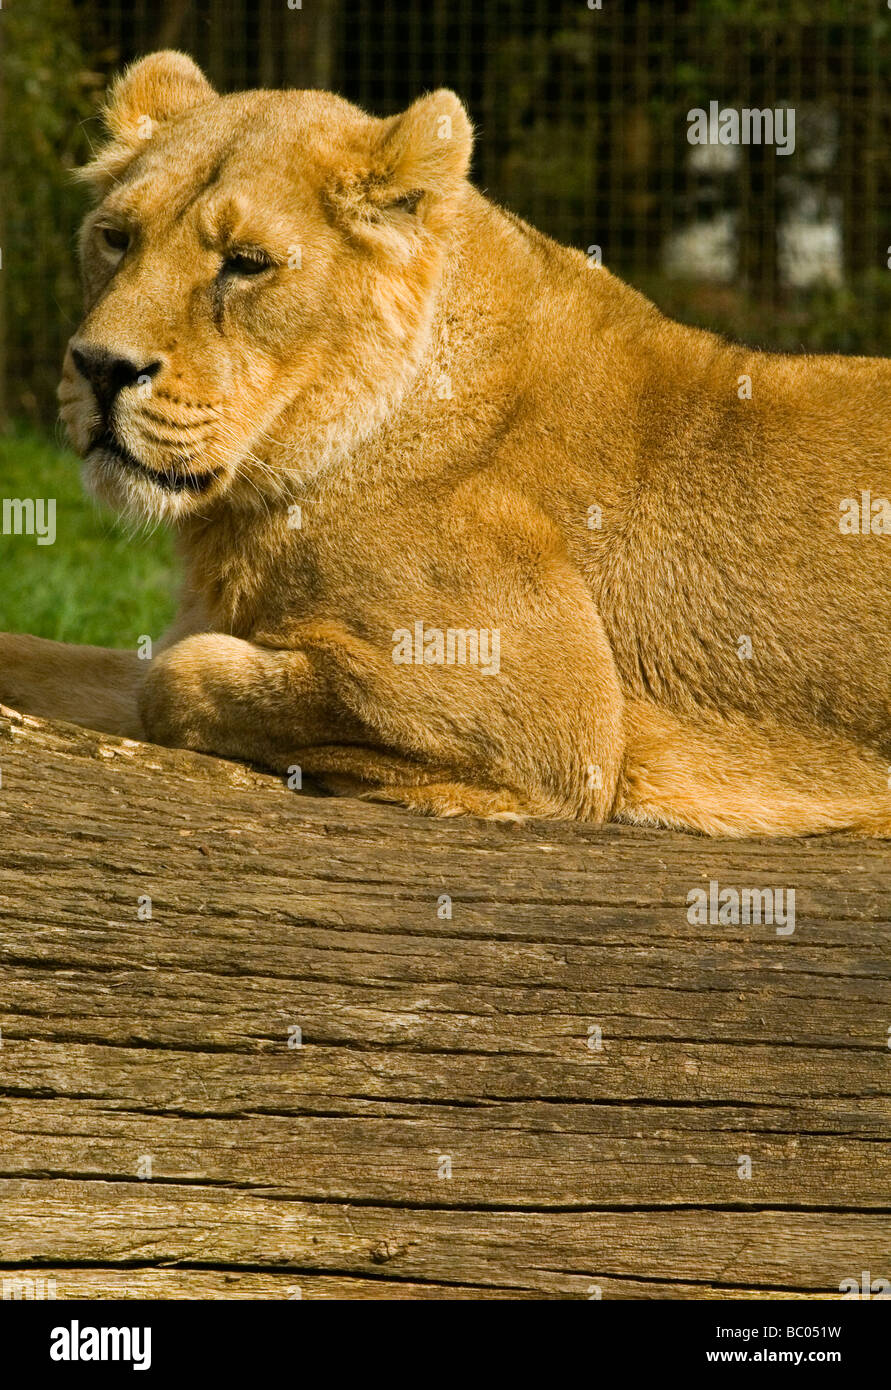 Lionne Panthera leo est l'un des quatre grands félins du Genre Panthera, et un membre de la famille des Félidés. Vu reposant sur un journal. Banque D'Images